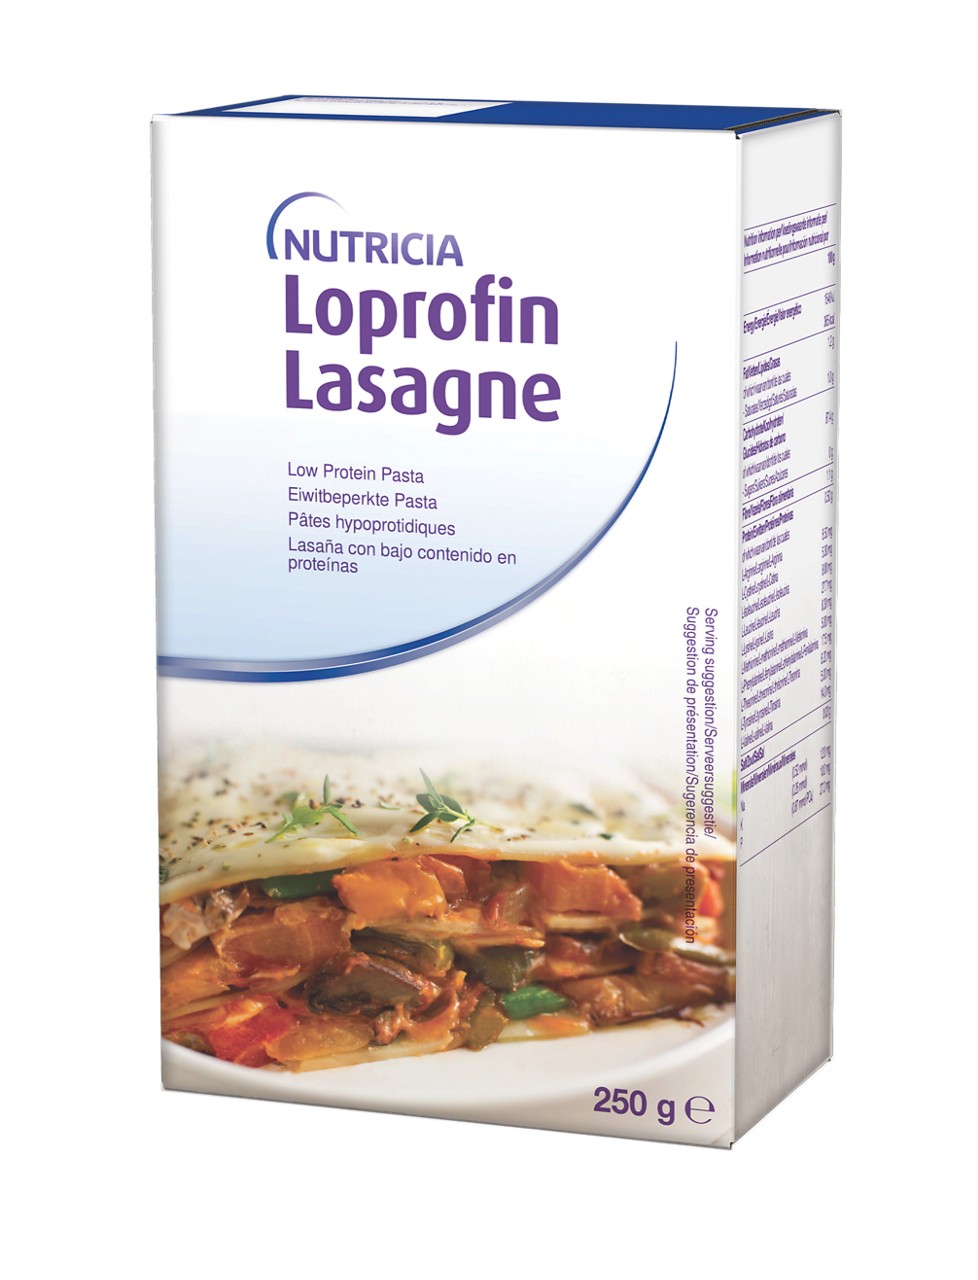 en-GB,Loprofin Lasagne